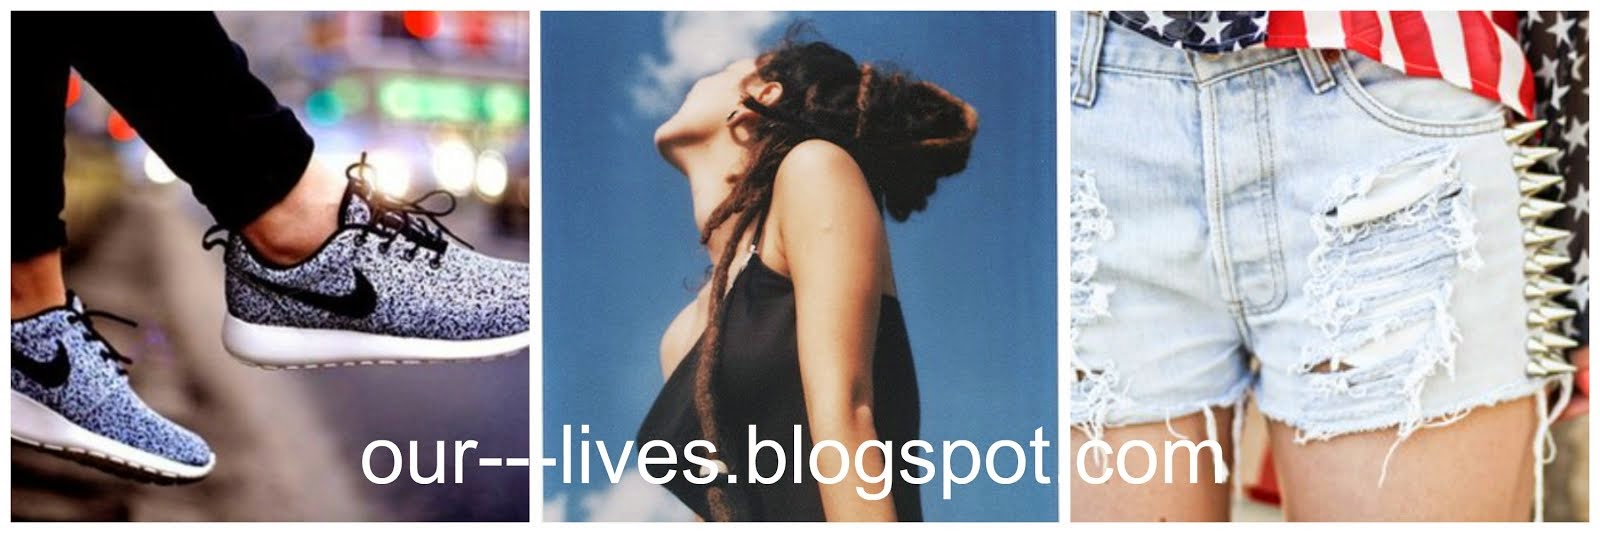 our---lives.blogspot.com